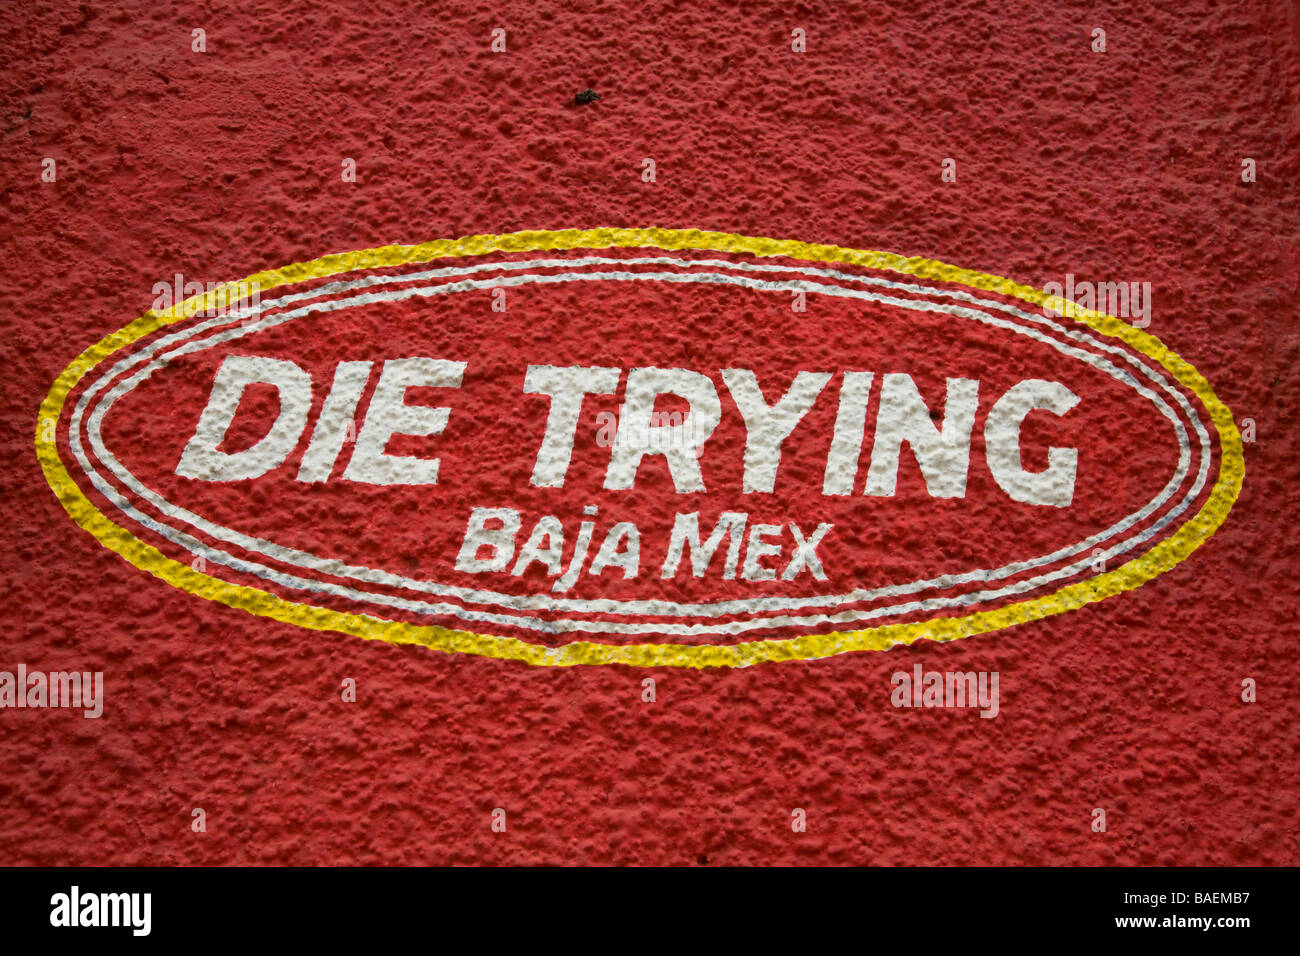 Mexique San Jose del Cabo Baja Die Trying Mex peint sur mur rouge logo et nom du magasin de détail Banque D'Images